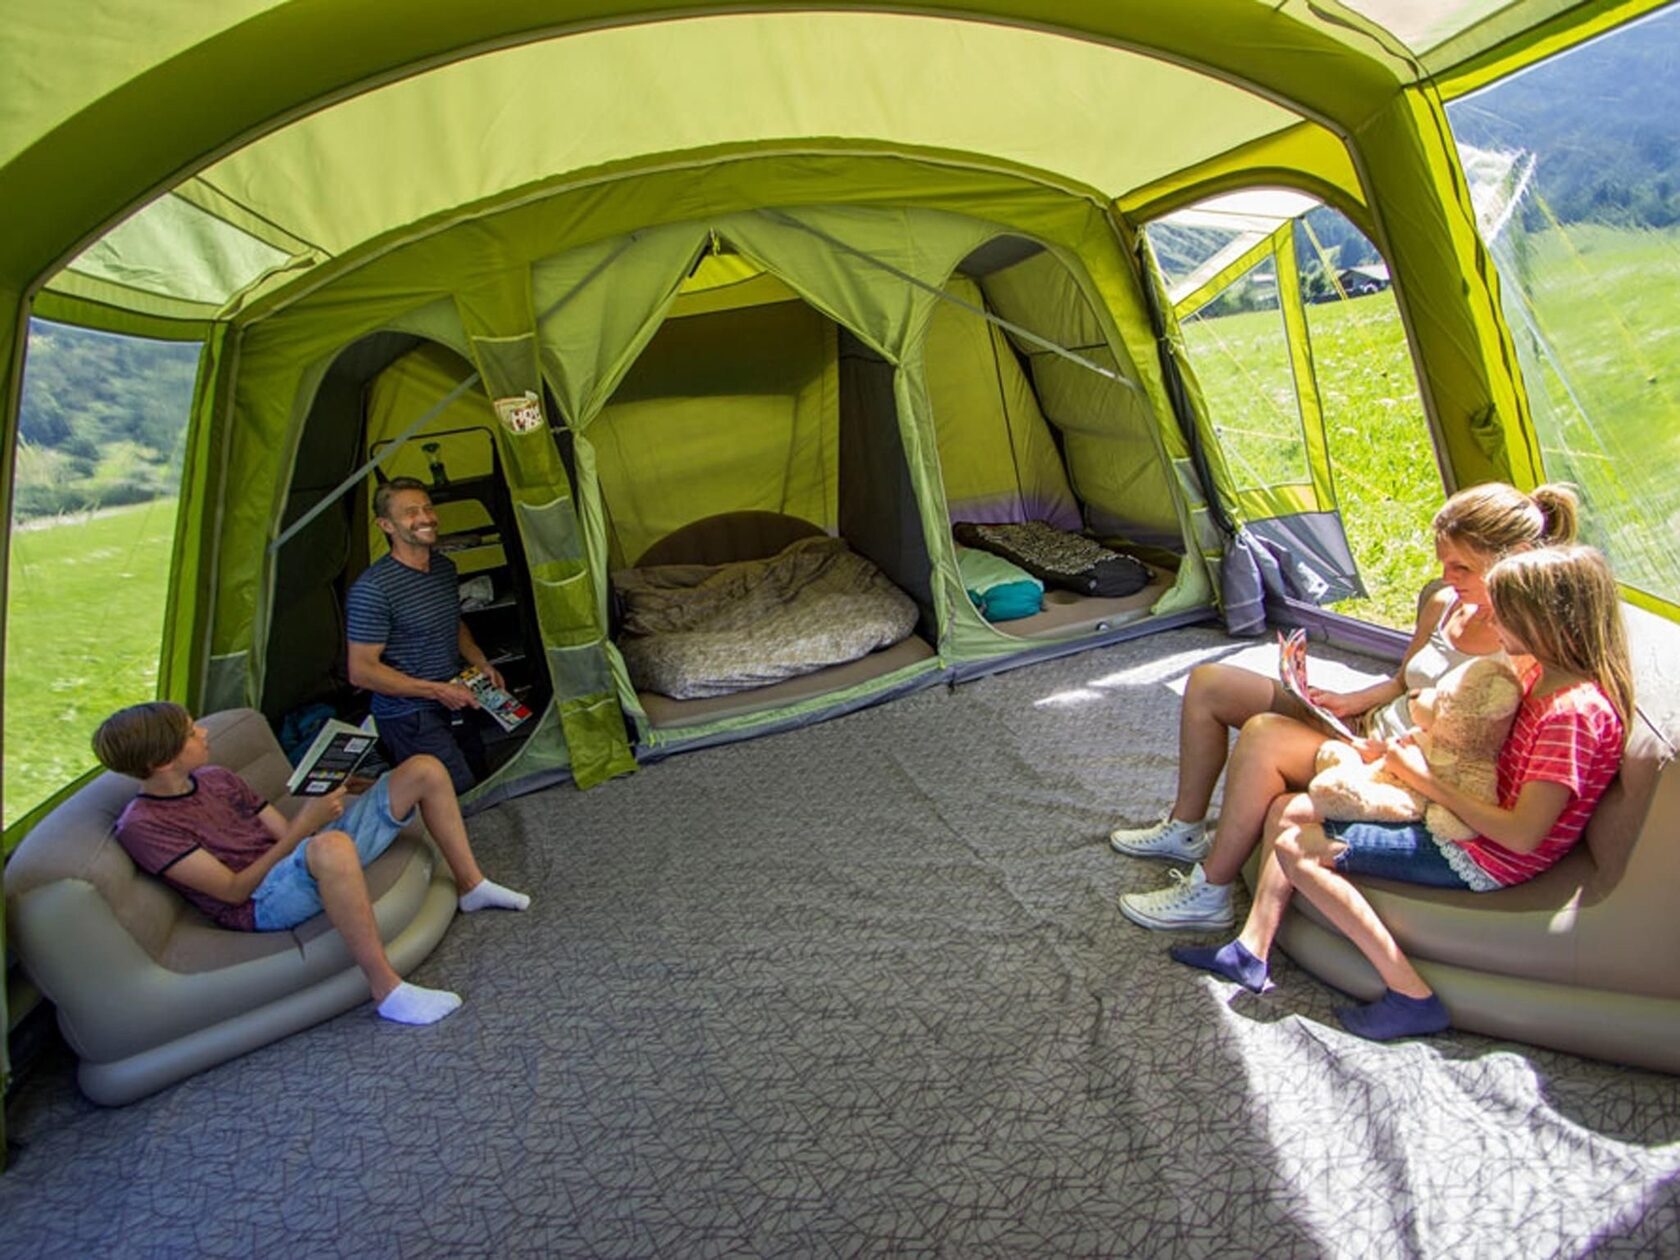 Палатки для отдыха на природе семьей